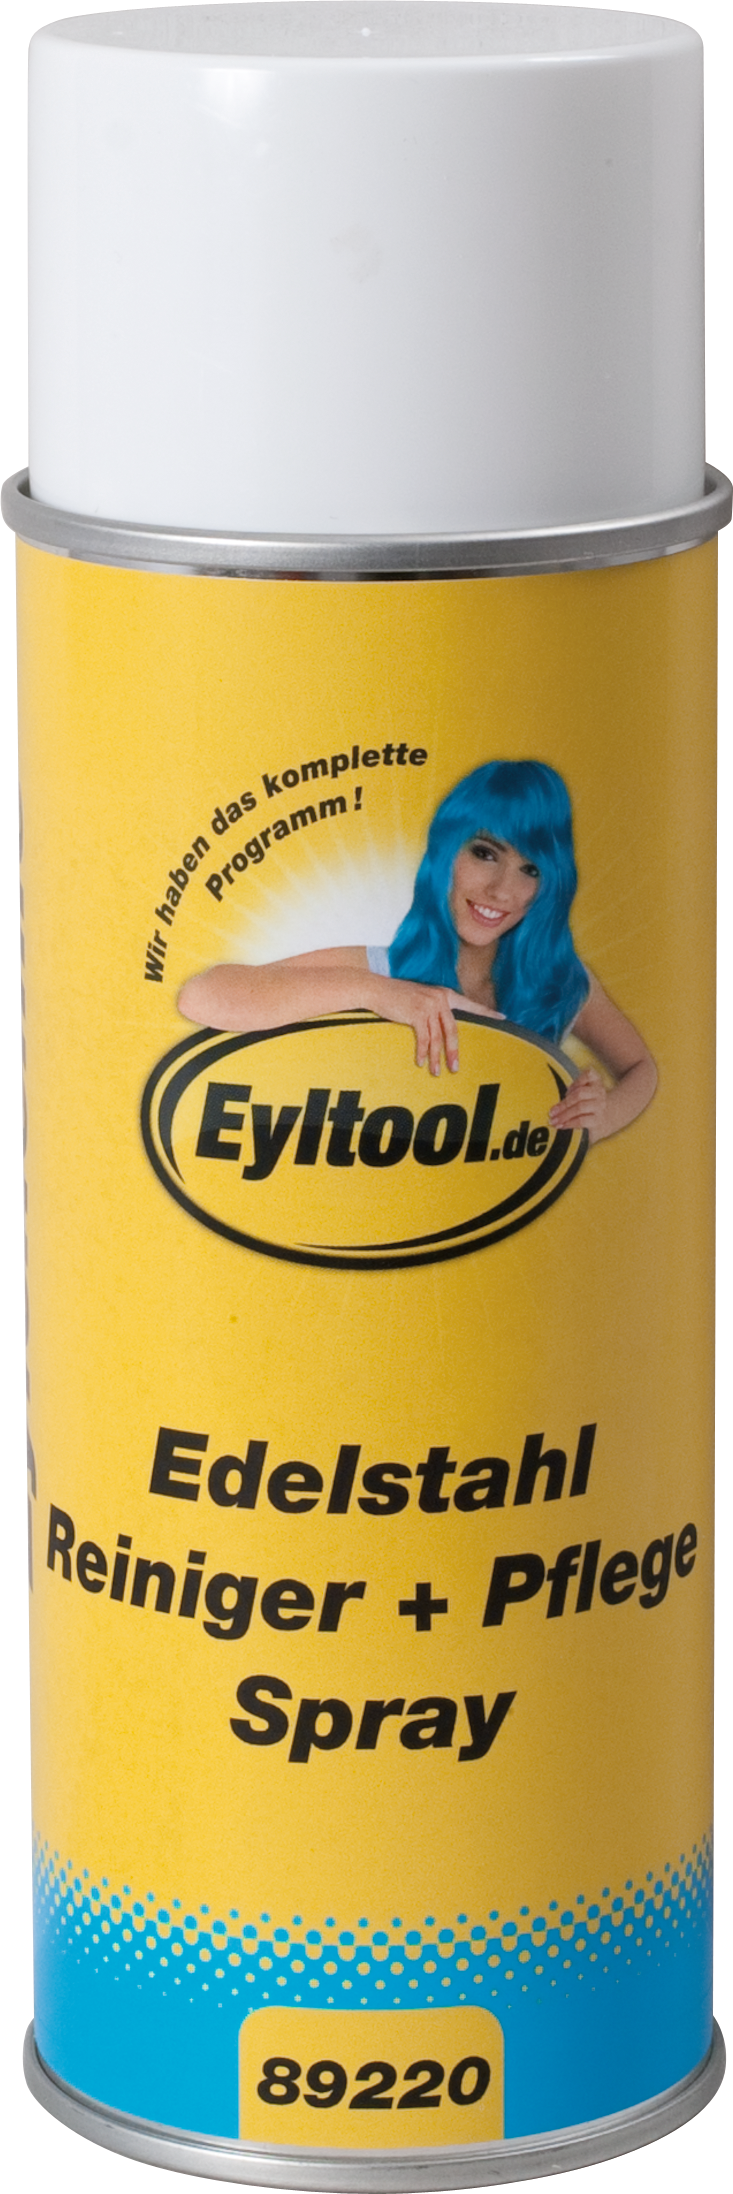 Edelstahlreiniger-/Pflege Spray 0,4l